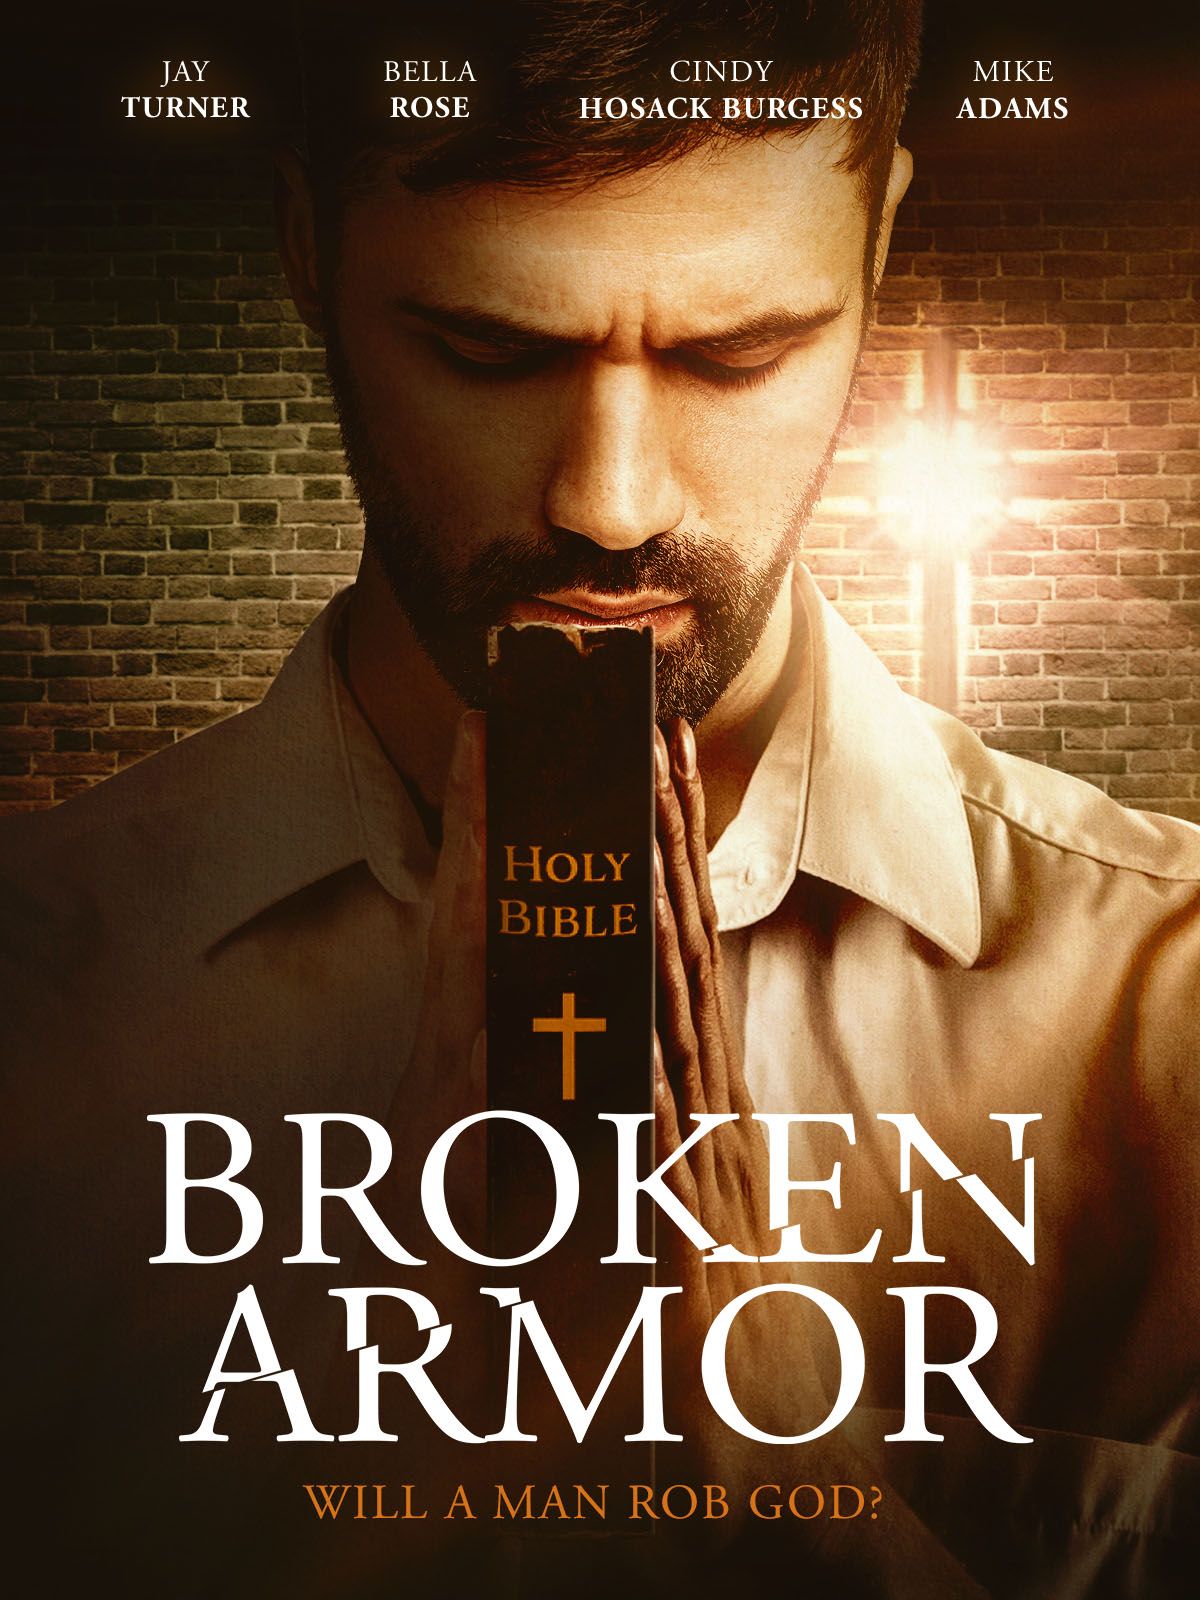 Keyart for the movie Broken Armor